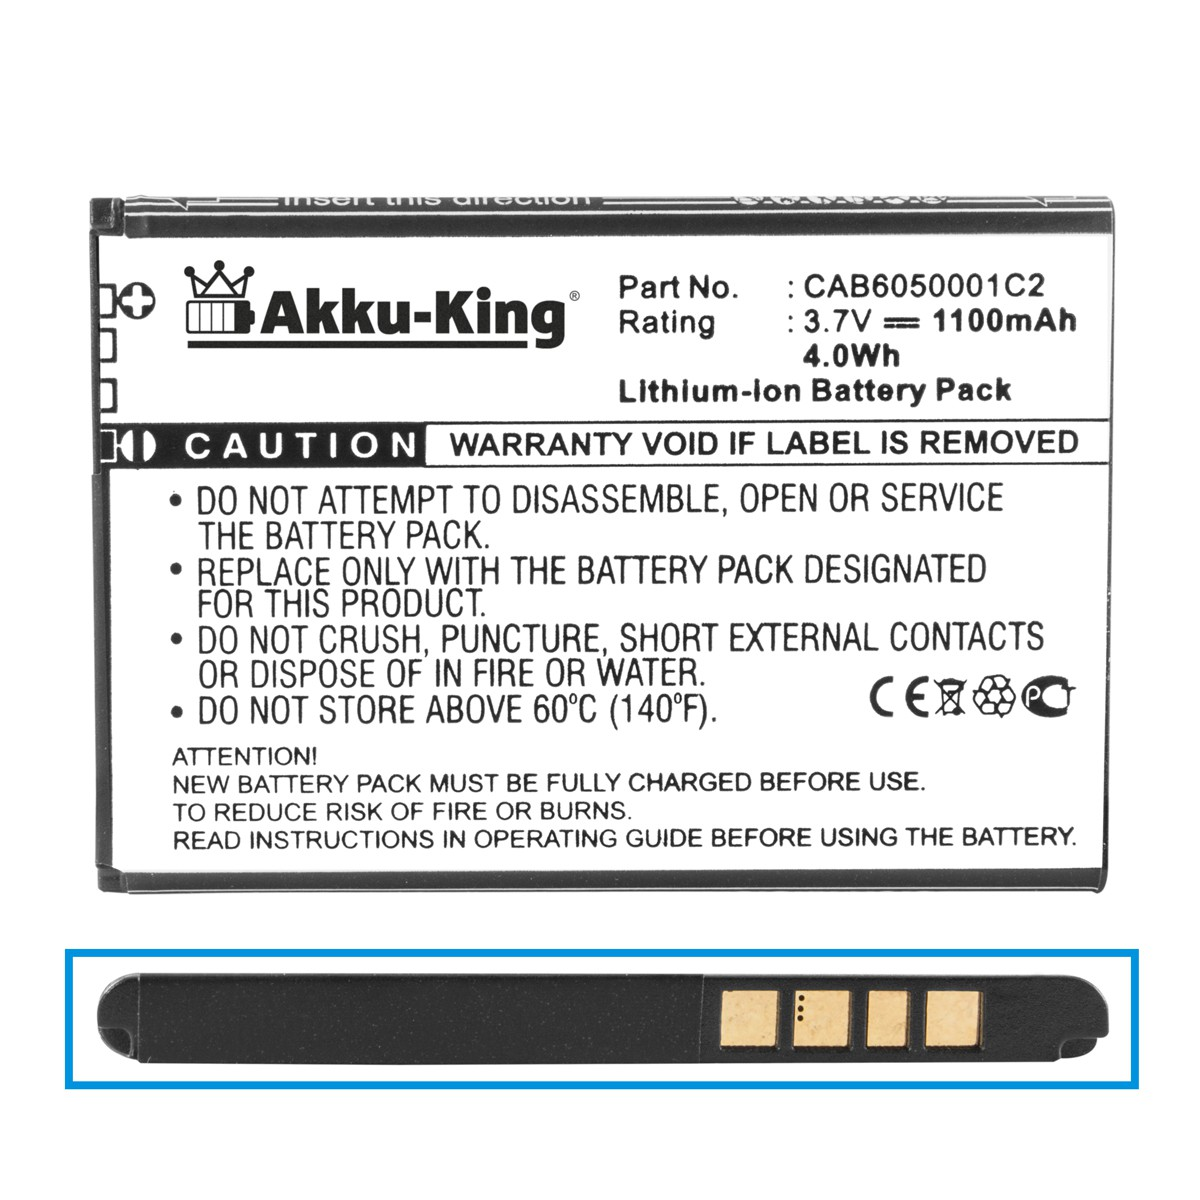 AKKU-KING Akku für Alcatel Li-Ion CAB6050001C2 Volt, 1100mAh 3.7 Handy-Akku